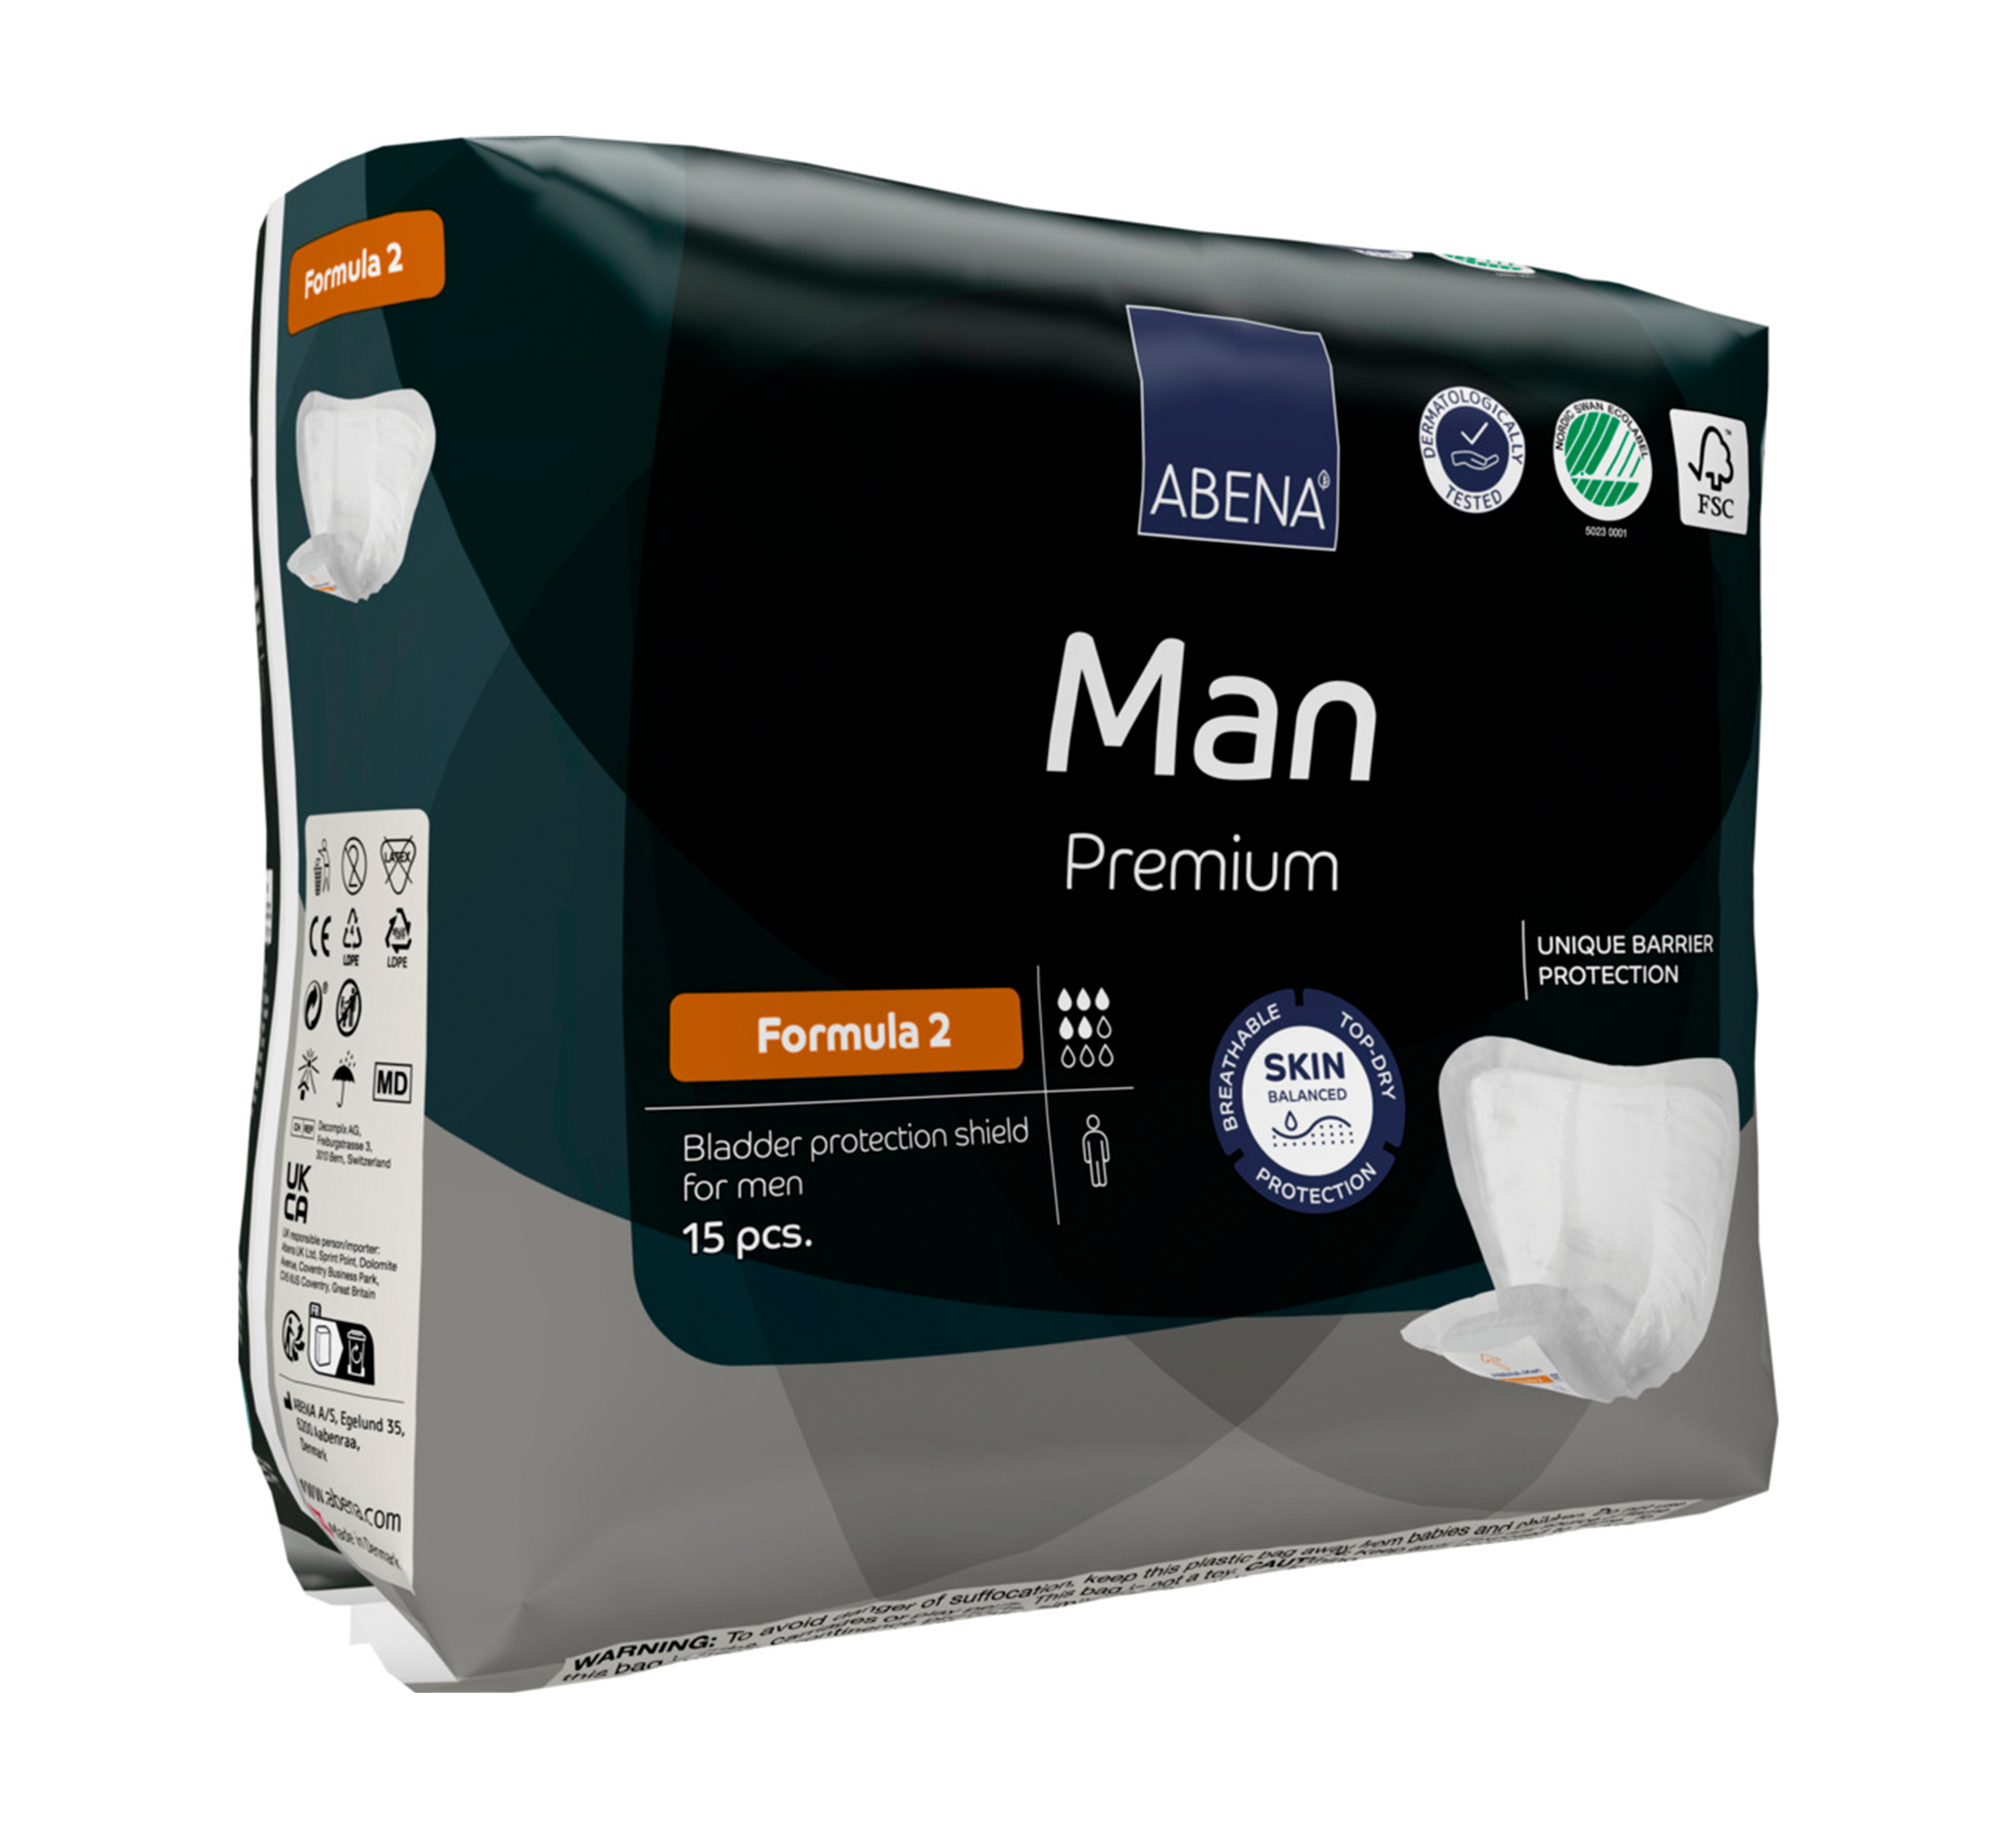 ABENA Man Premium Formula 2 absorbierende Einlage, 15 Stk.